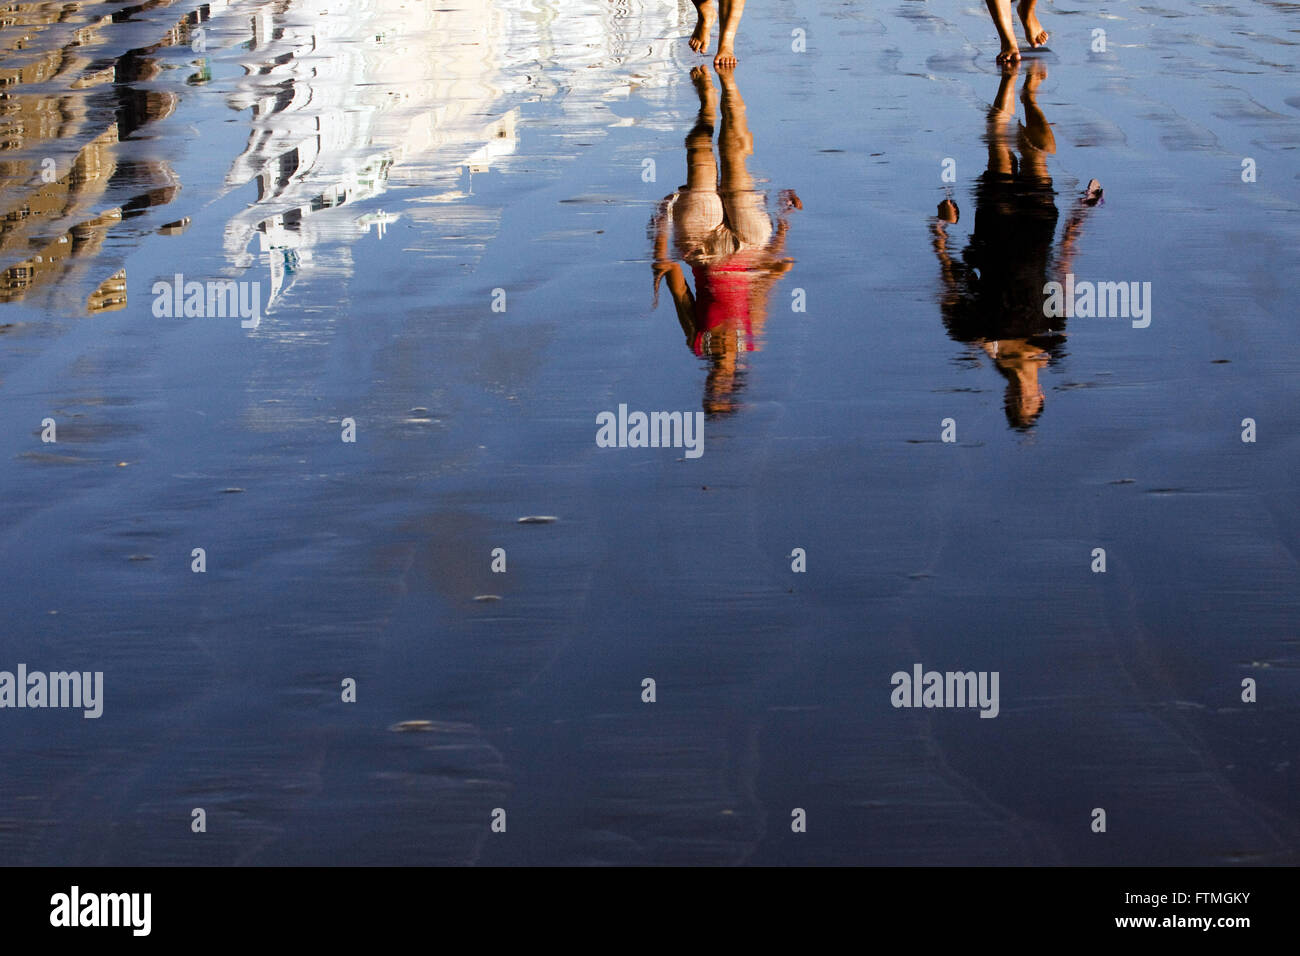 La réflexion de baigneurs la marche sur la plage en Balneario Camboriu Banque D'Images